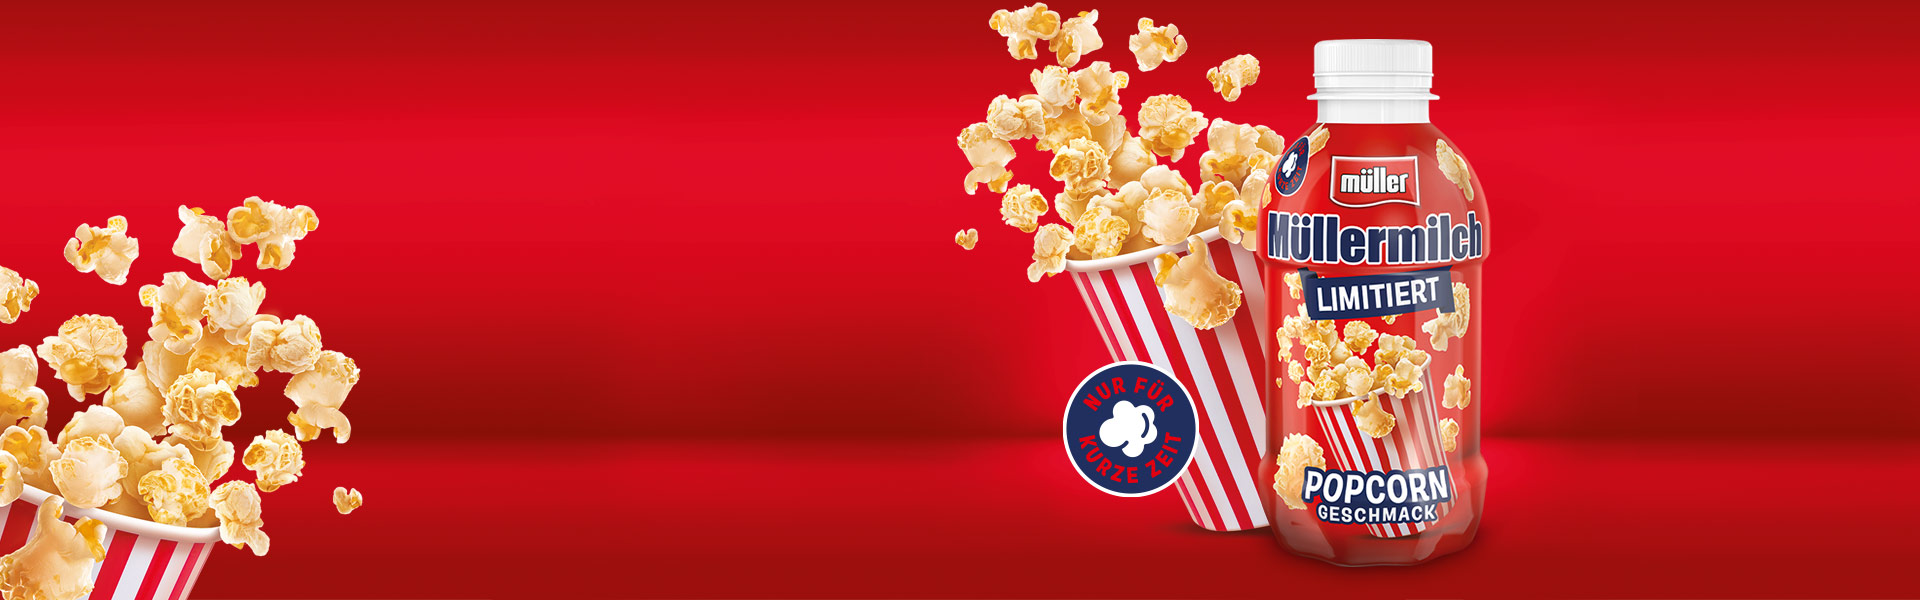 Müllermilch Limitiert Popcorn Geschmack bringt Kino-Feeling nach Hause!